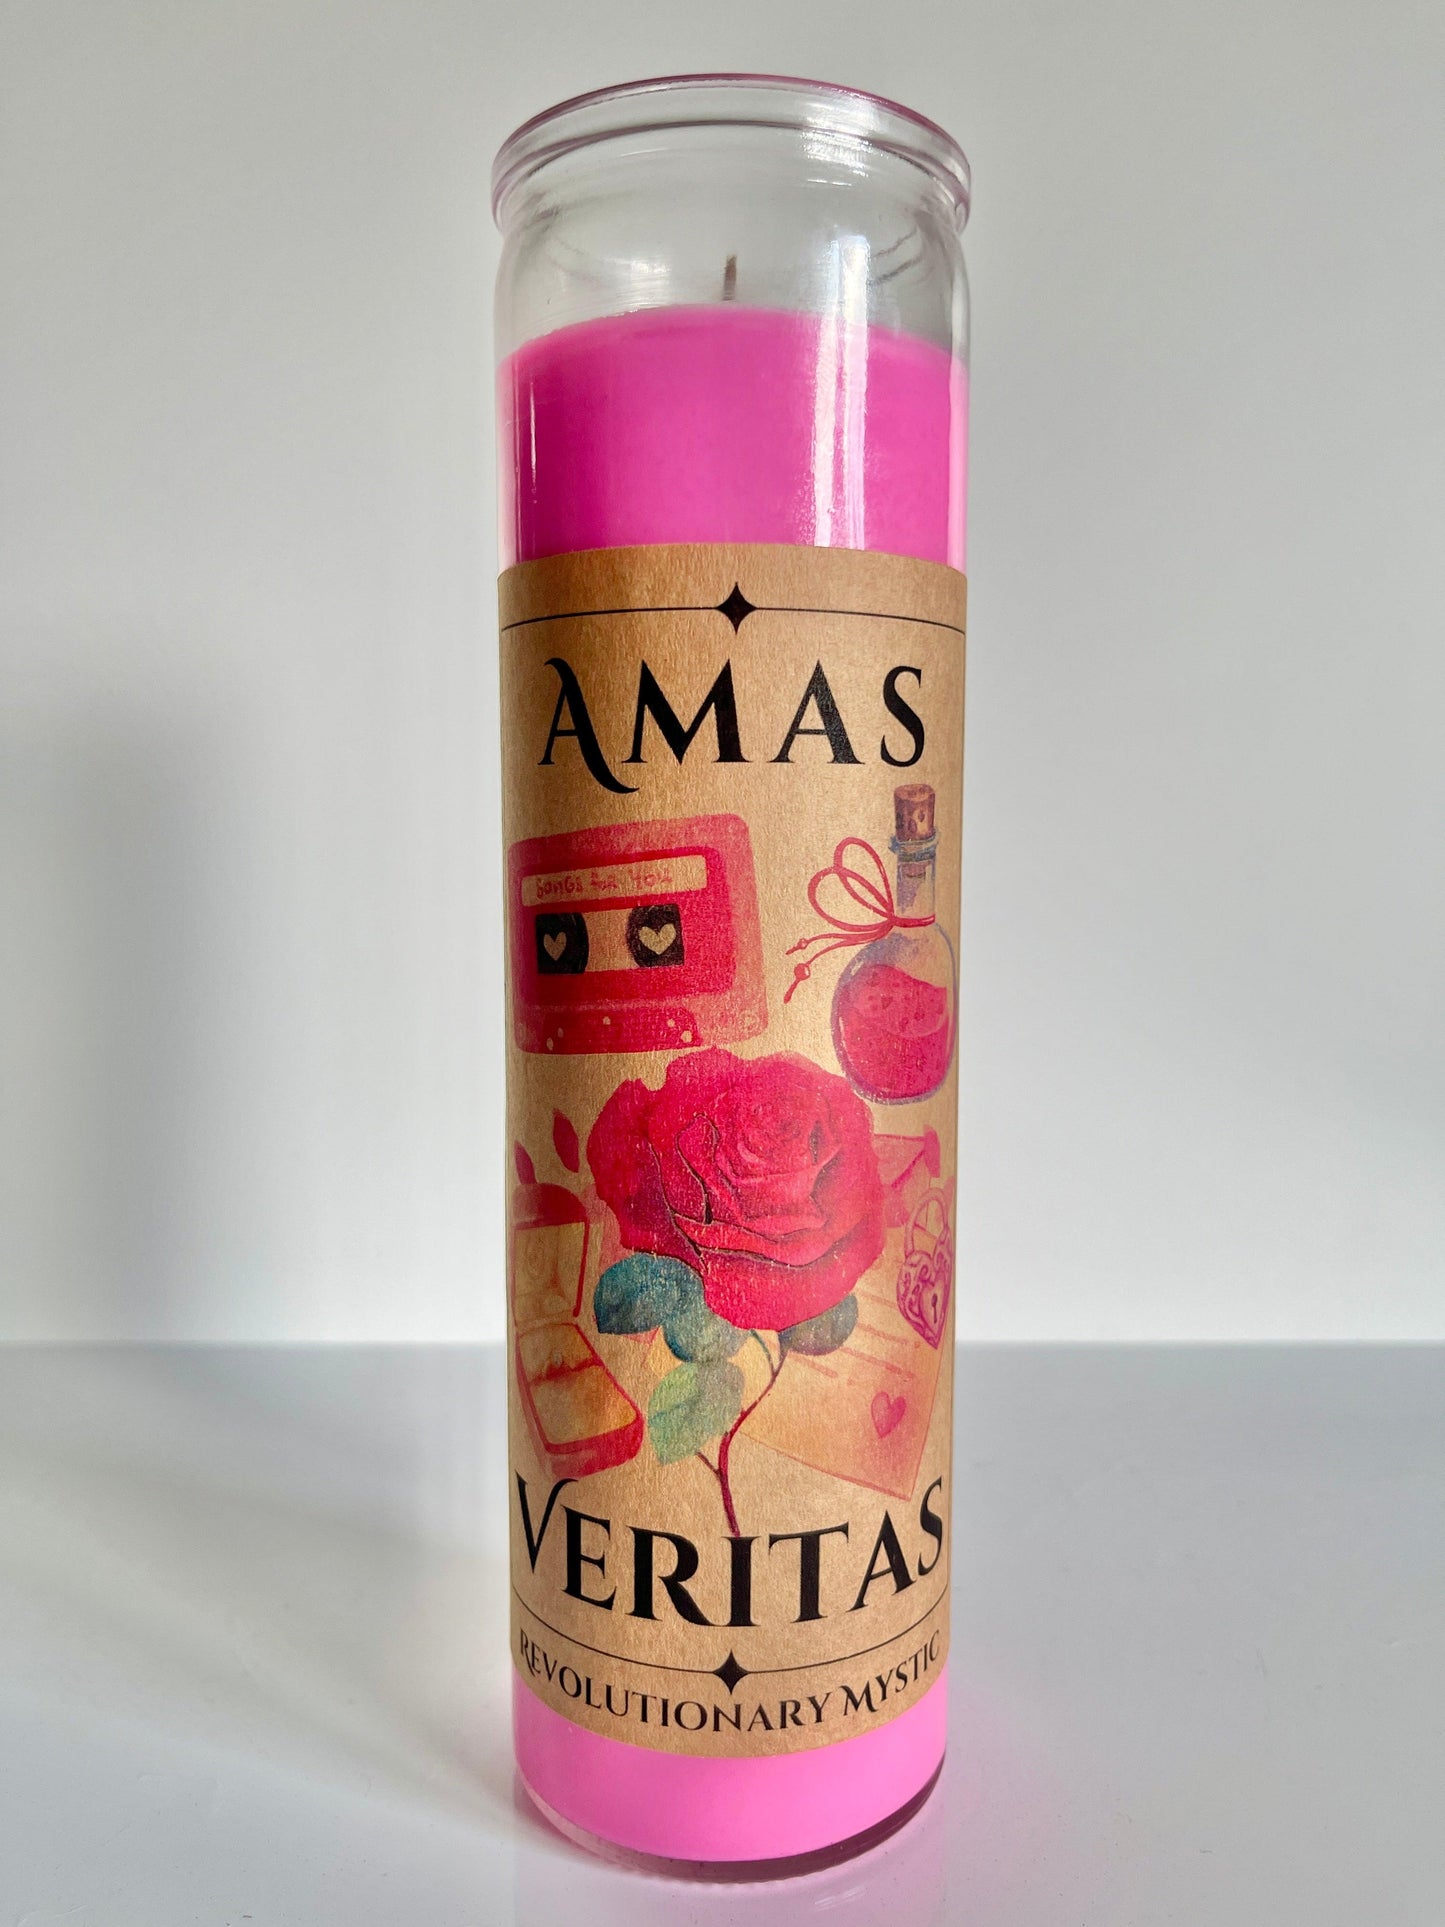 Amas Veritas "True Love" Candle